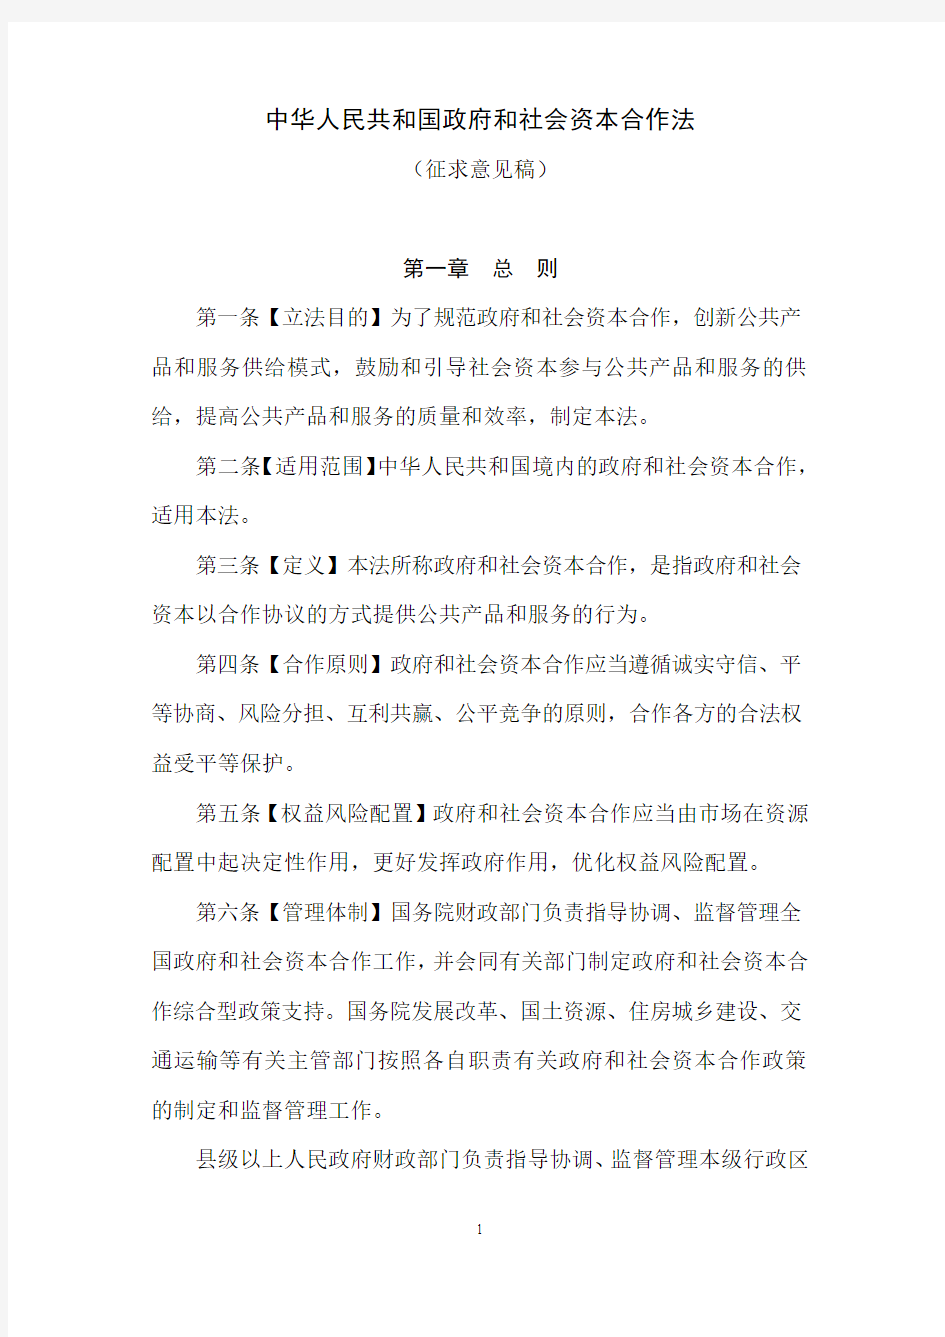 中华人民共和国政府和社会资本合作法(征求意见稿)